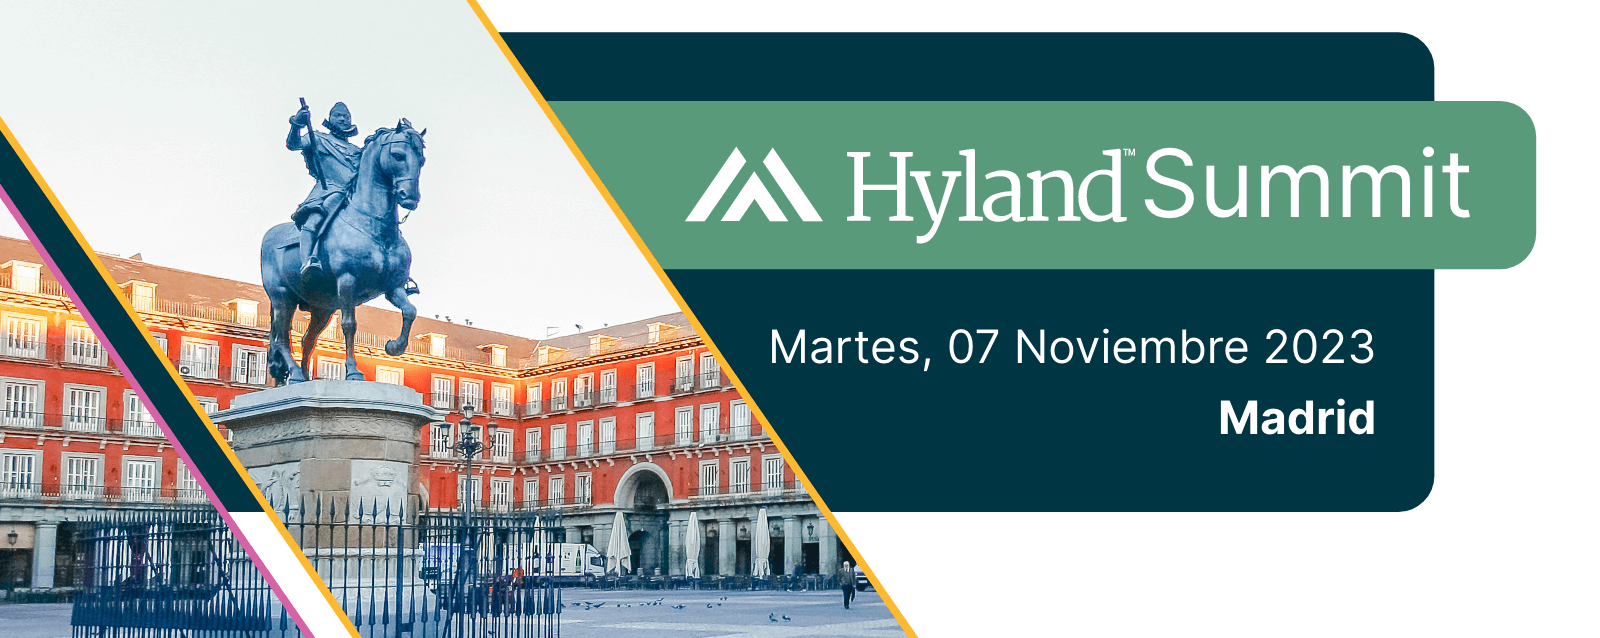 Hyland Summit Madrid 7 Nov